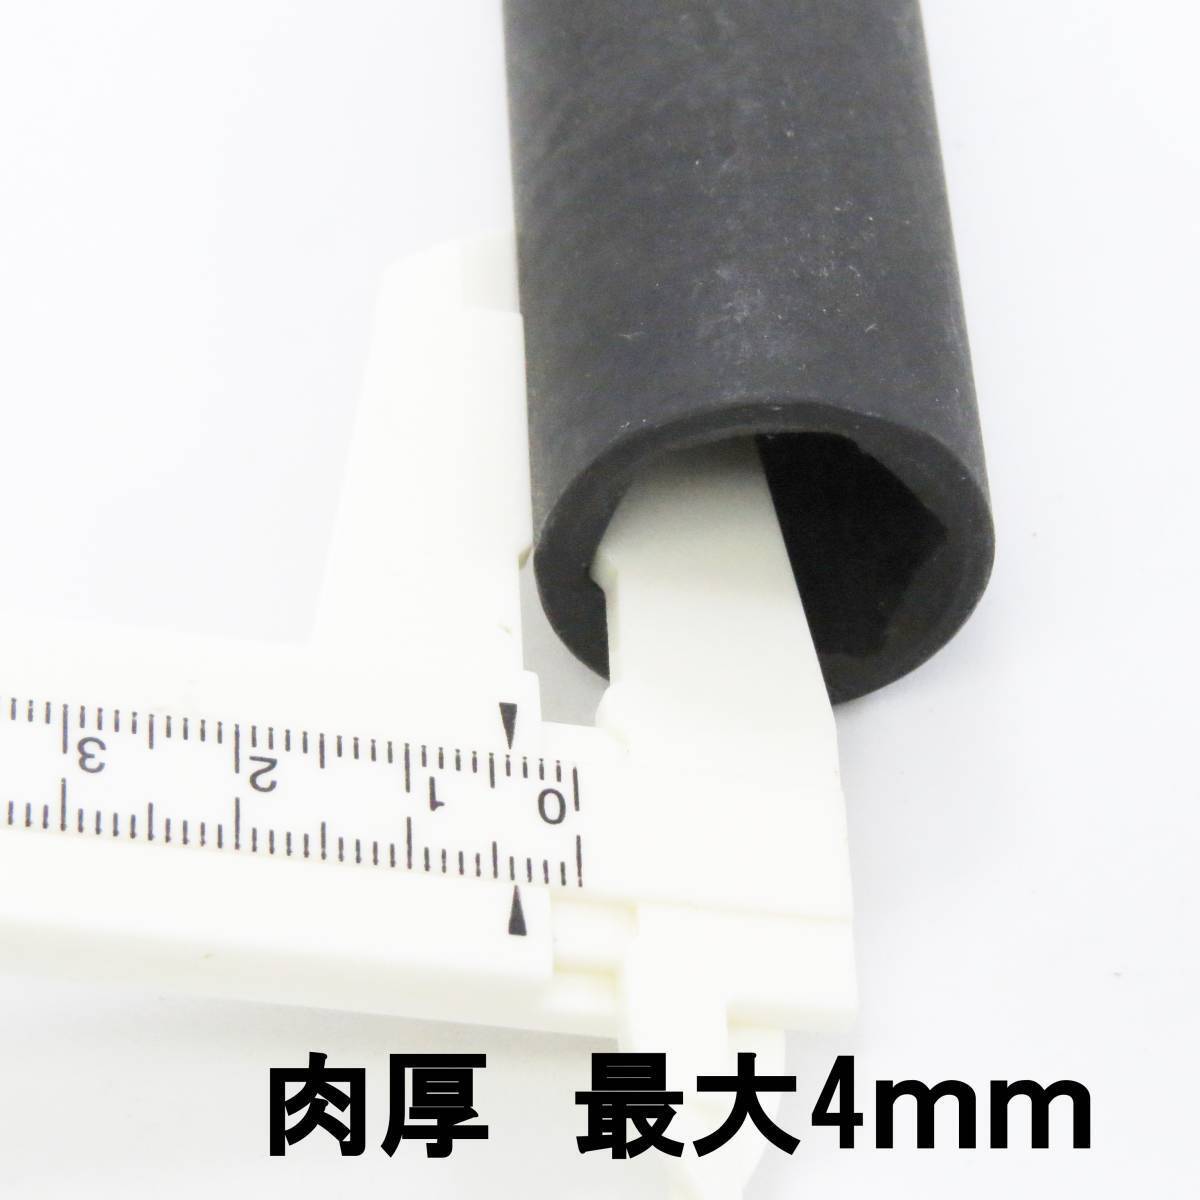  【送料無料】 アルミホイール用薄口ソケットセット インパクトレンチ対応 ホイールナットソケット 17mm 19mm 差込角 1/2 (12.7sq) の画像6